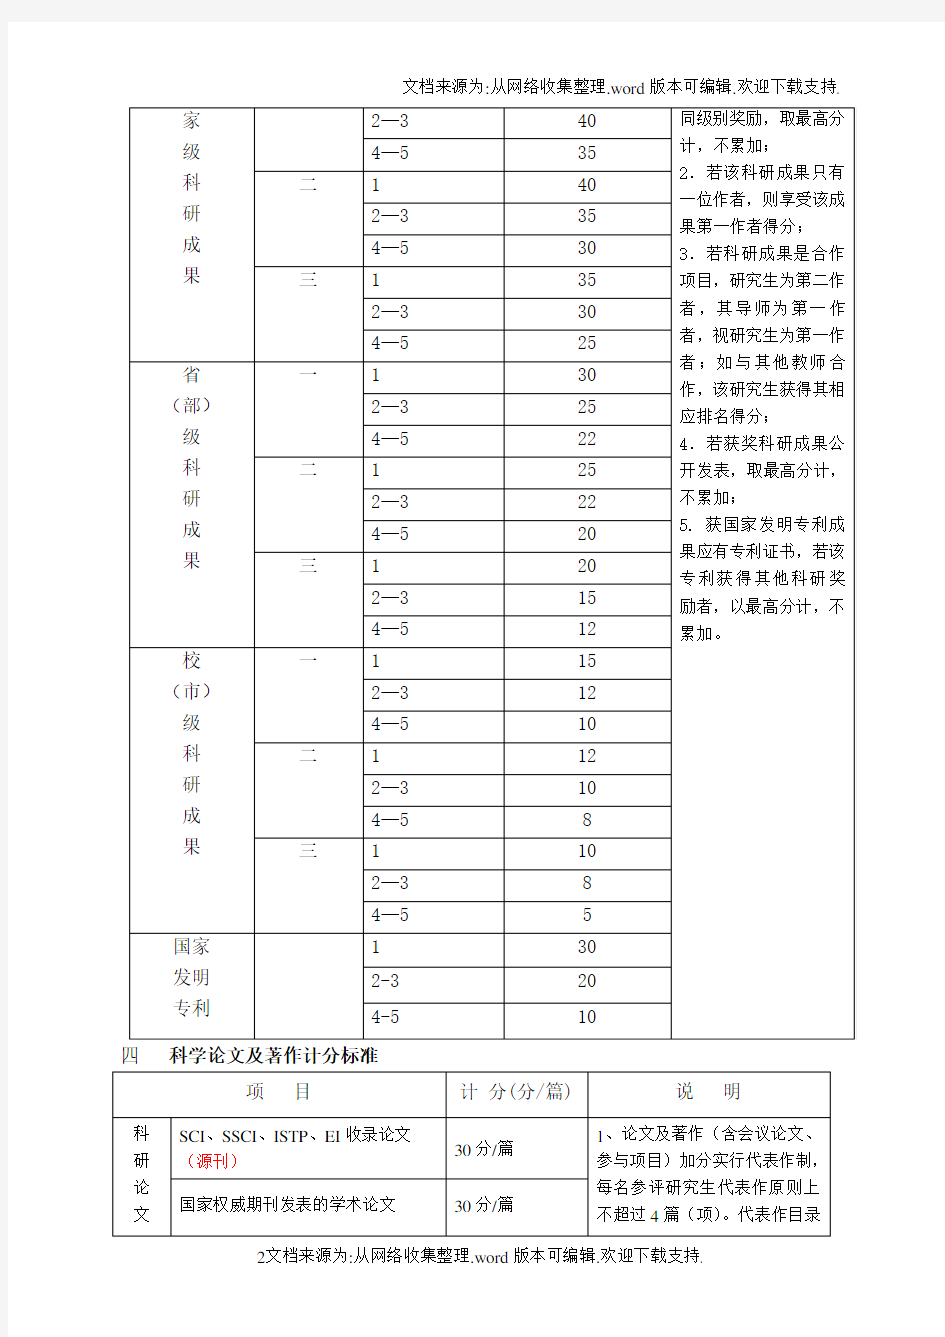 武汉大学优秀研究生奖学金评选计分标准